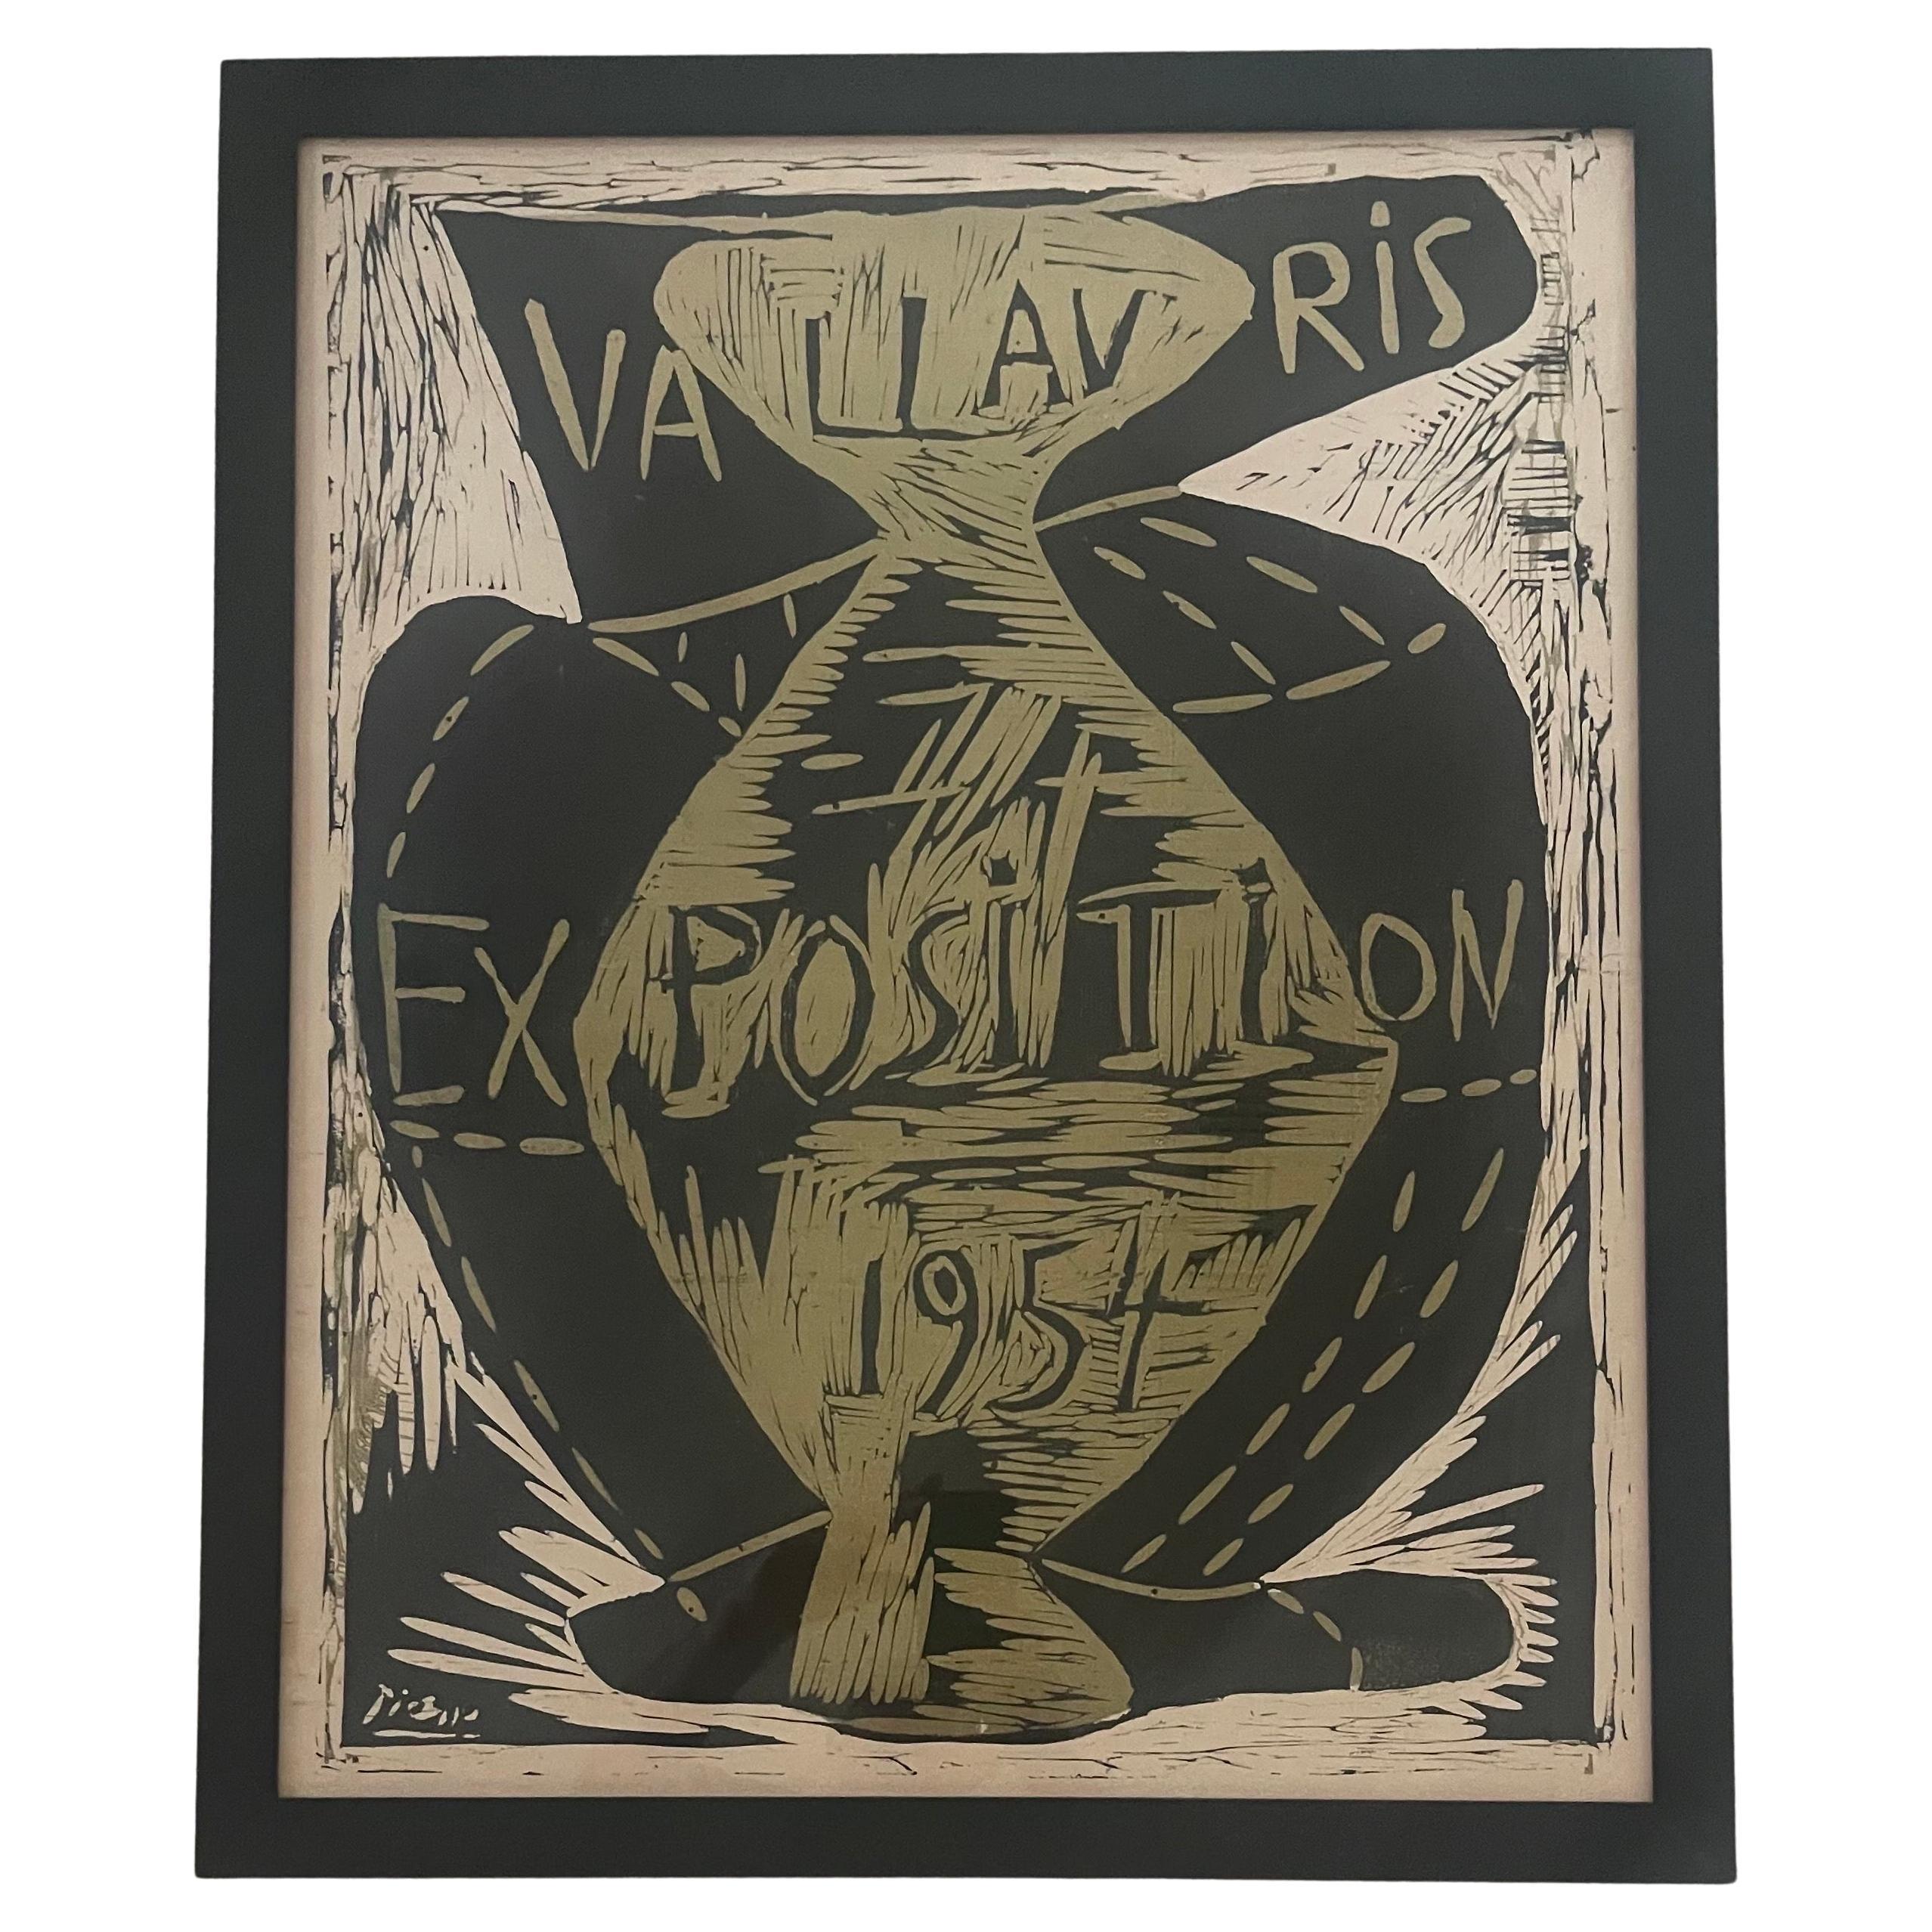 Seltenes Linocut-Poster „Vallavris-Ausstellung 1954“ von Pablo Picasso